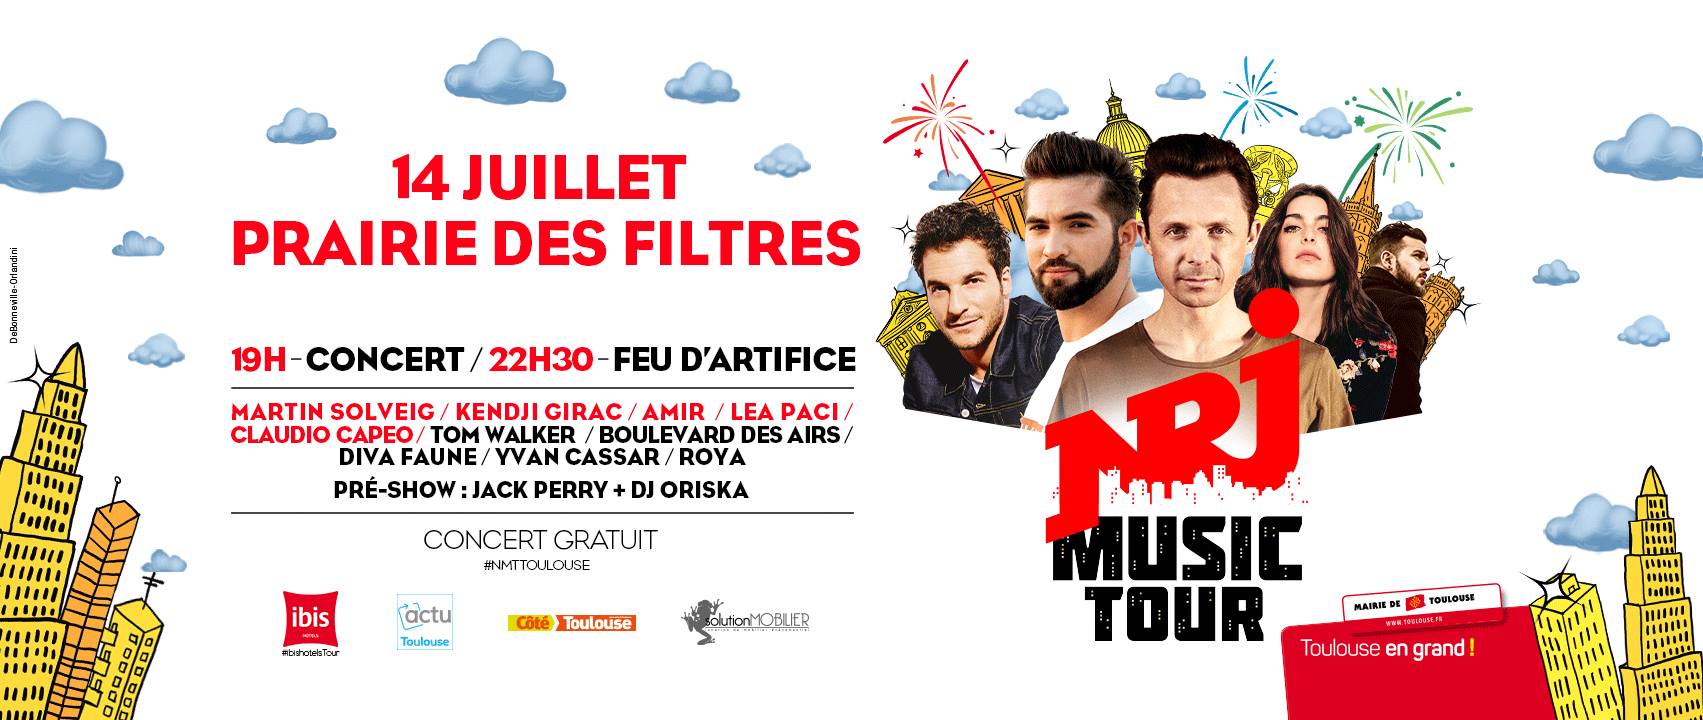 Le NRJ Music Tour fait étape à Toulouse le 14 juillet